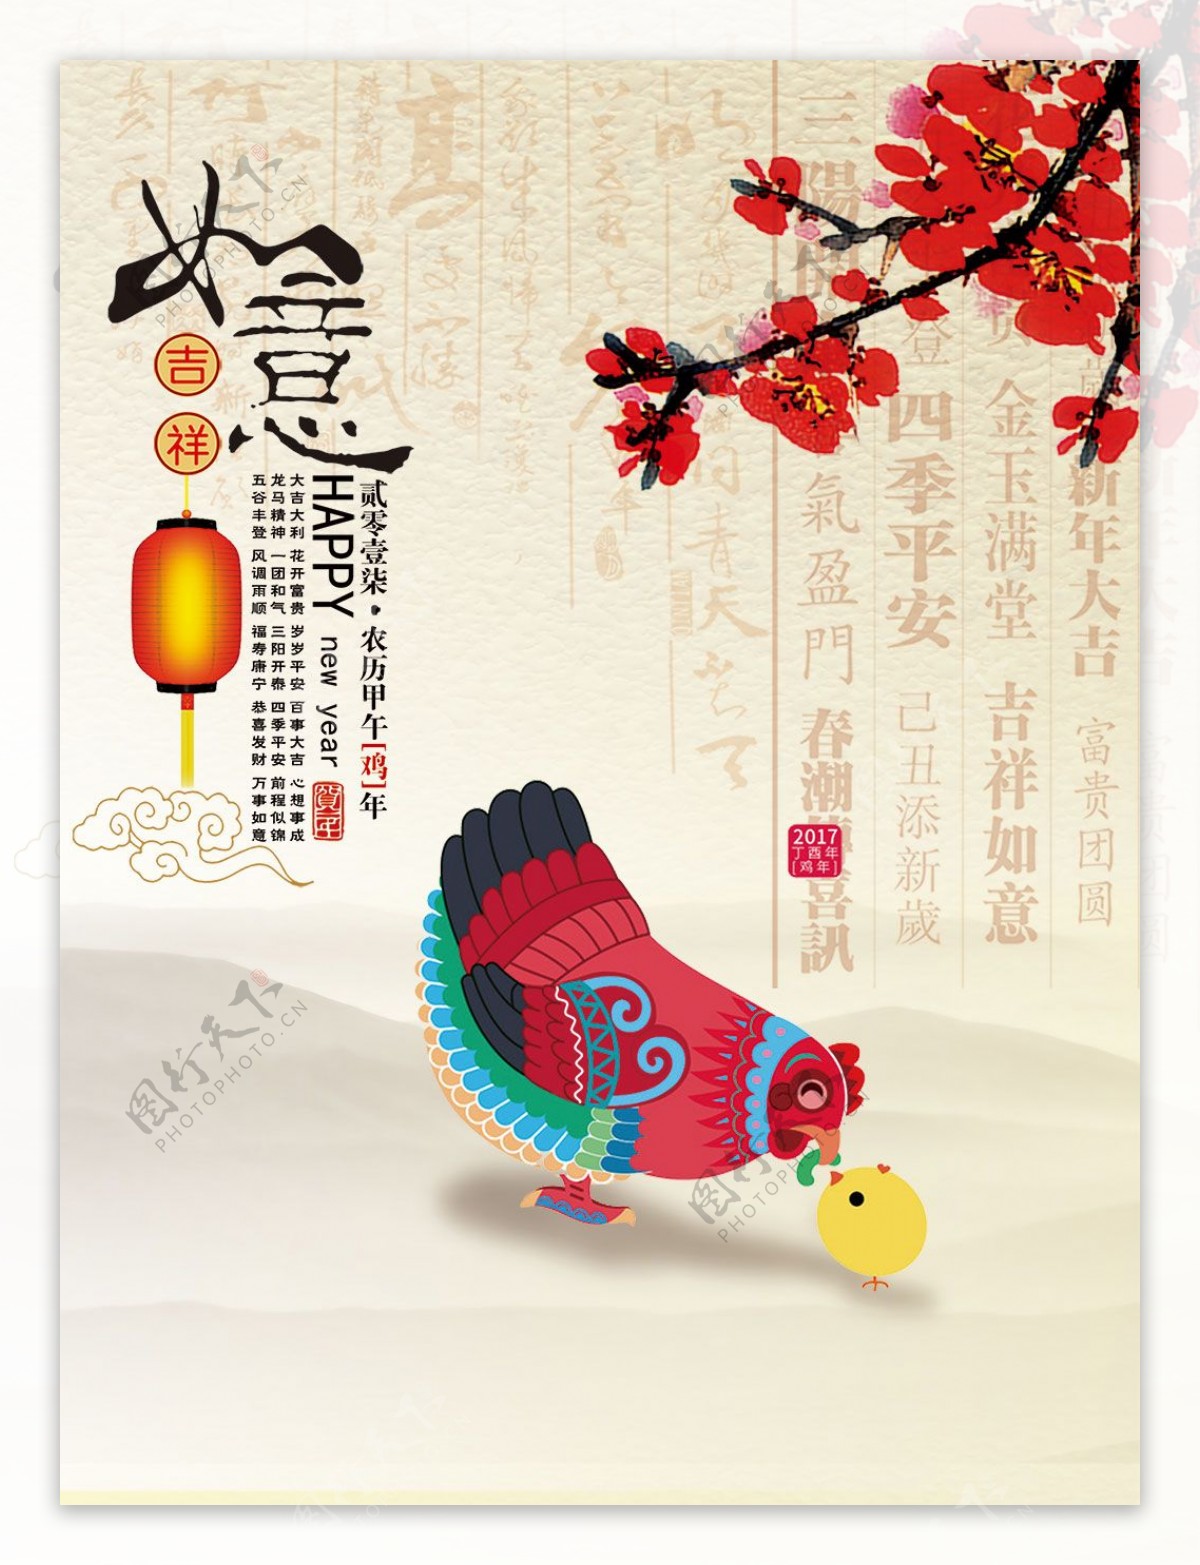 2017鸡年迎春节新年手绘海报设计psd